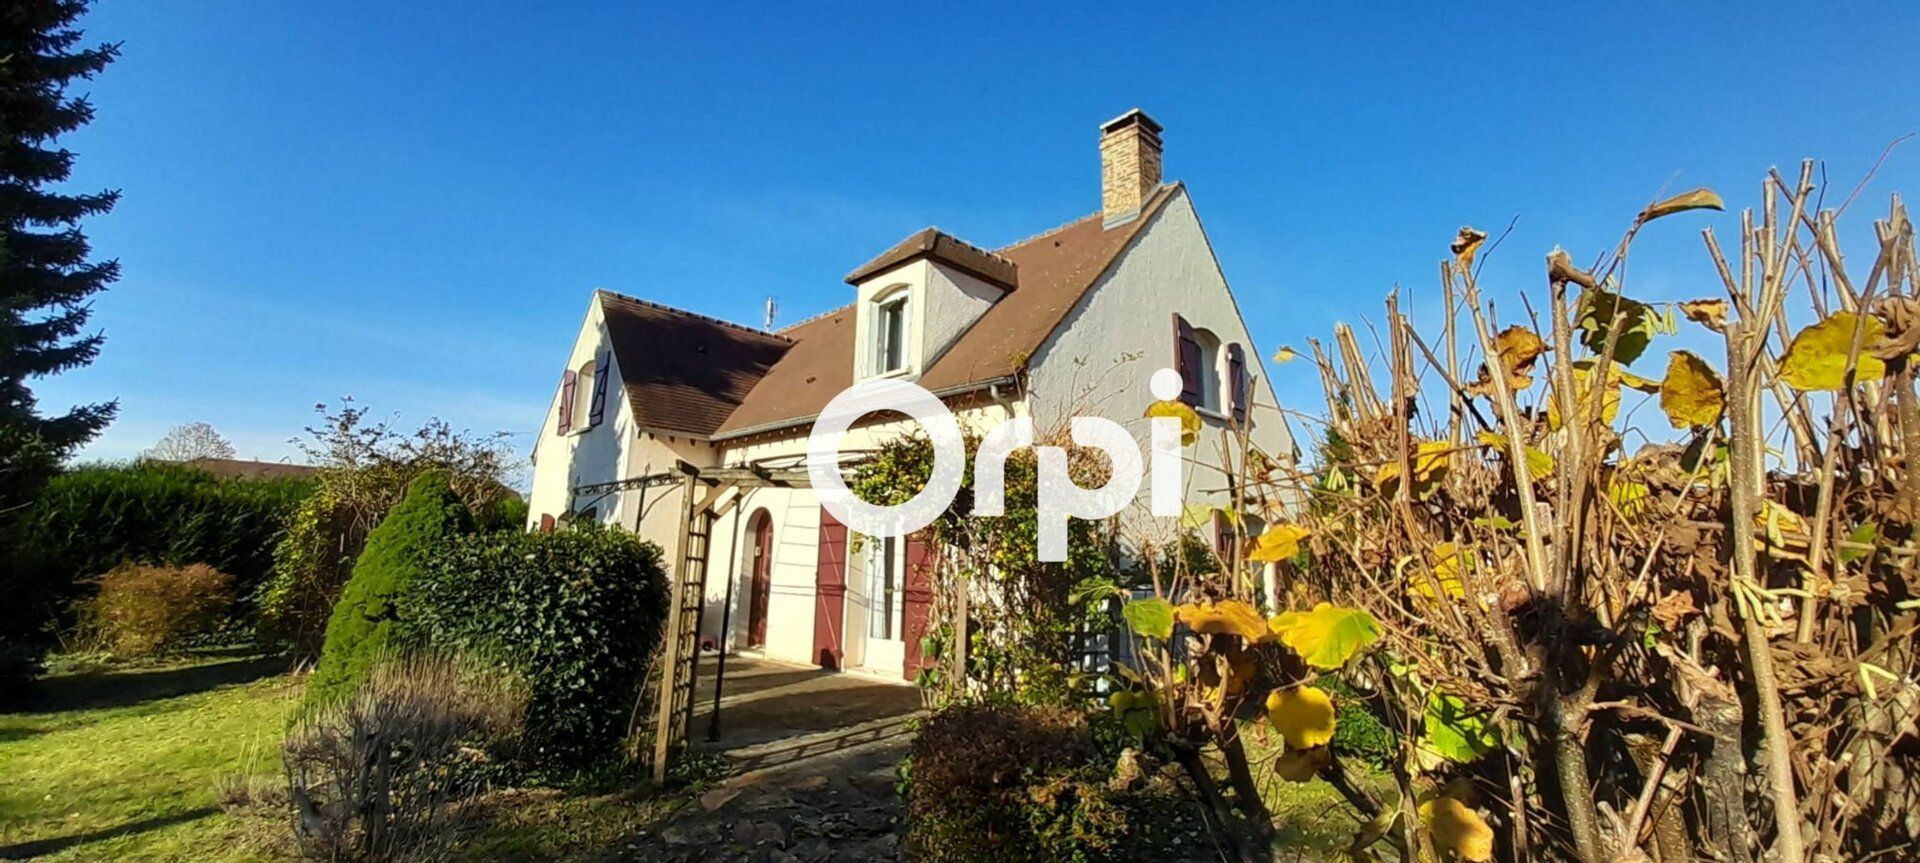 Maison à vendre 6 134m2 à Saint-Fargeau-Ponthierry vignette-1